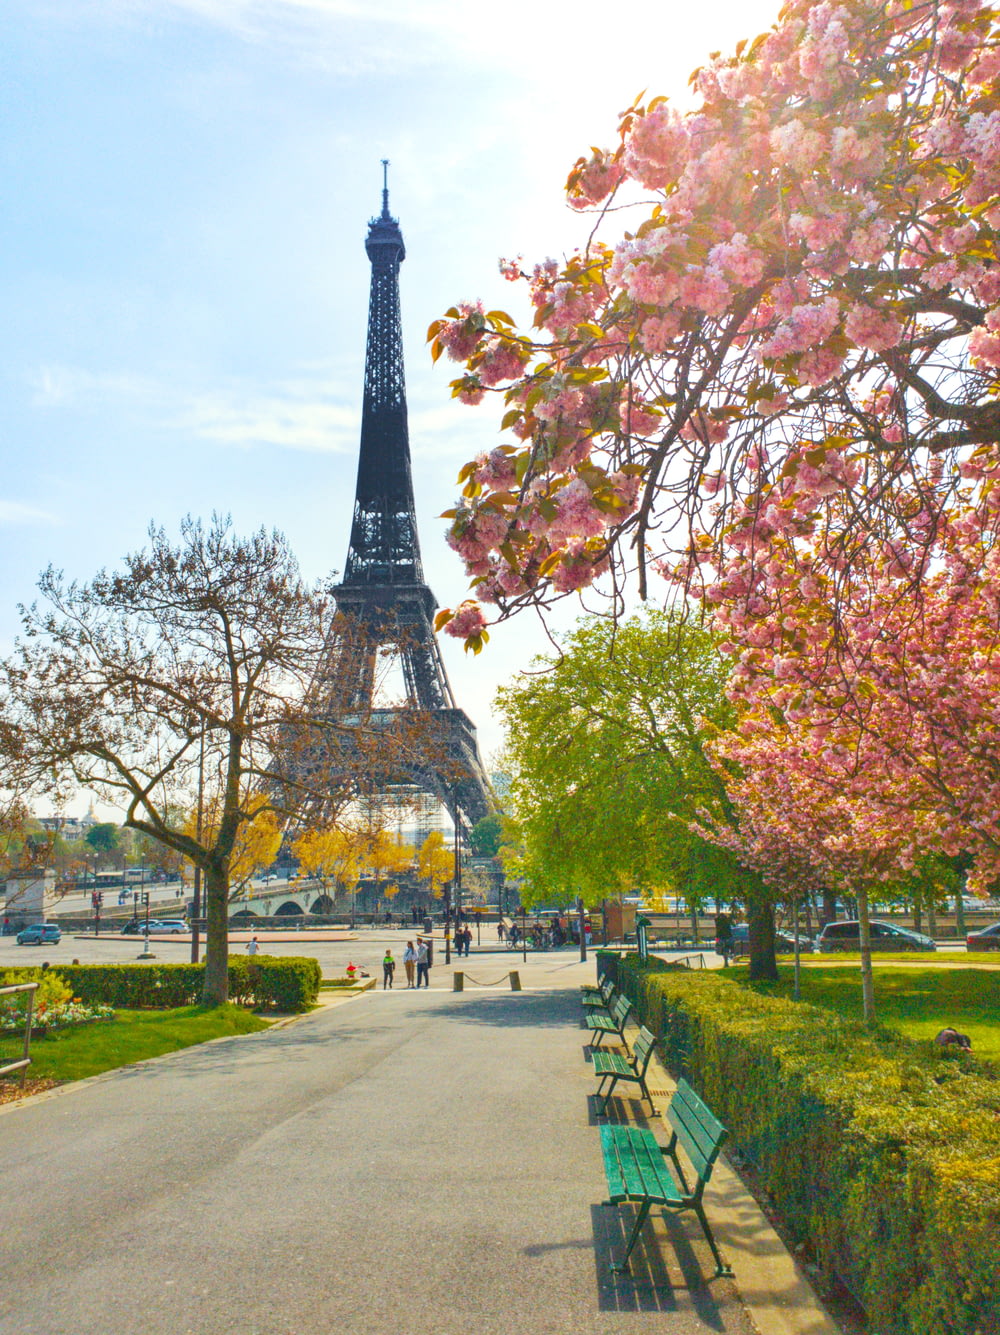 Tour Eiffel à Paris, France pendant la journée